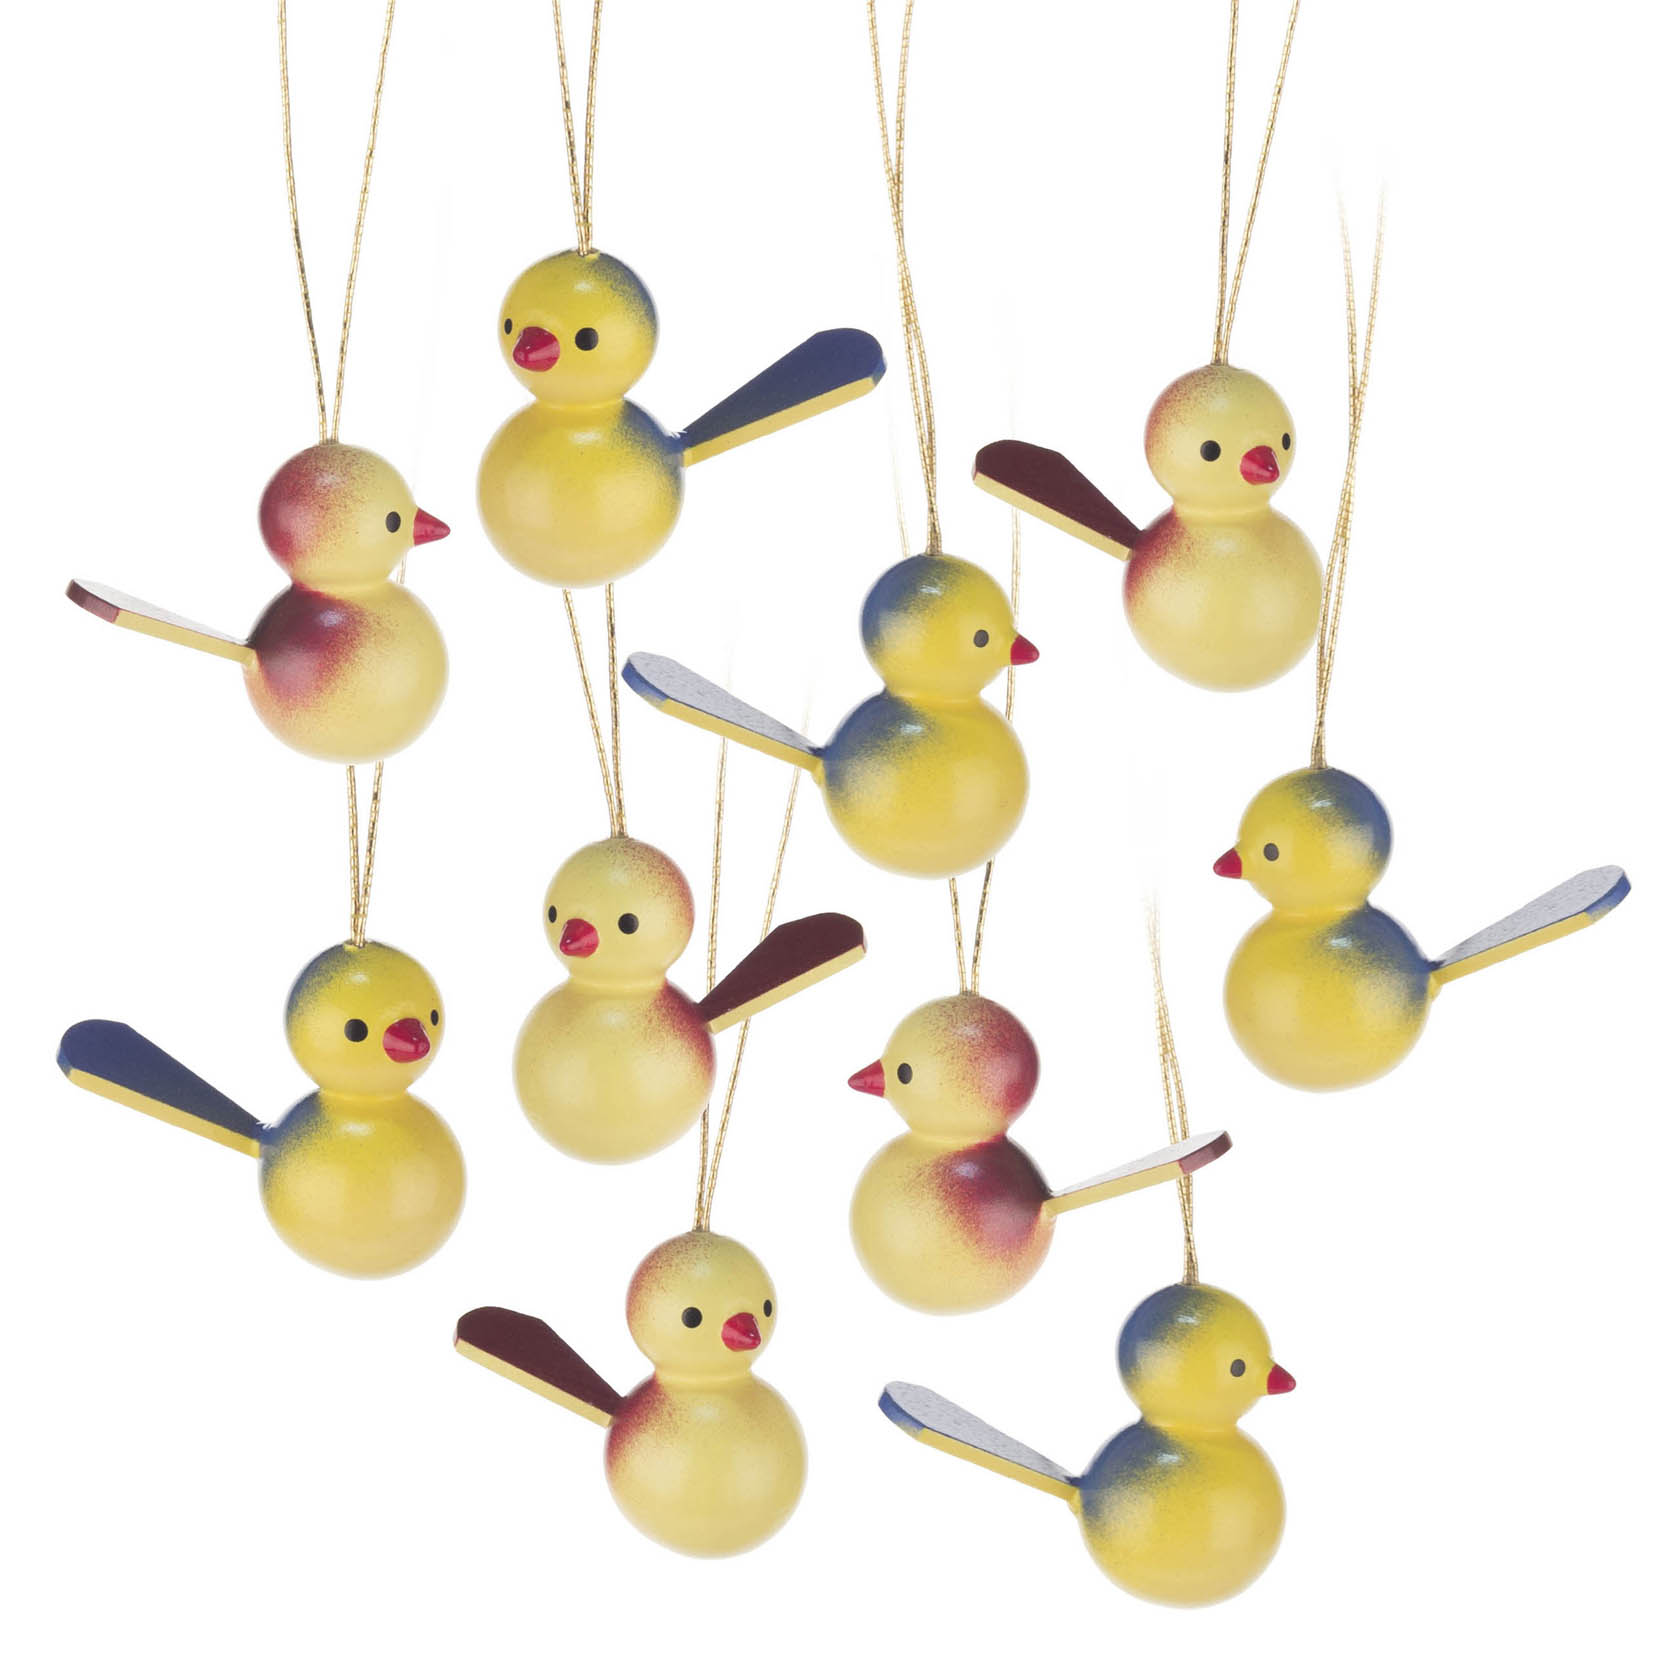 Behang Vögel (10) im Dregeno Online Shop günstig kaufen